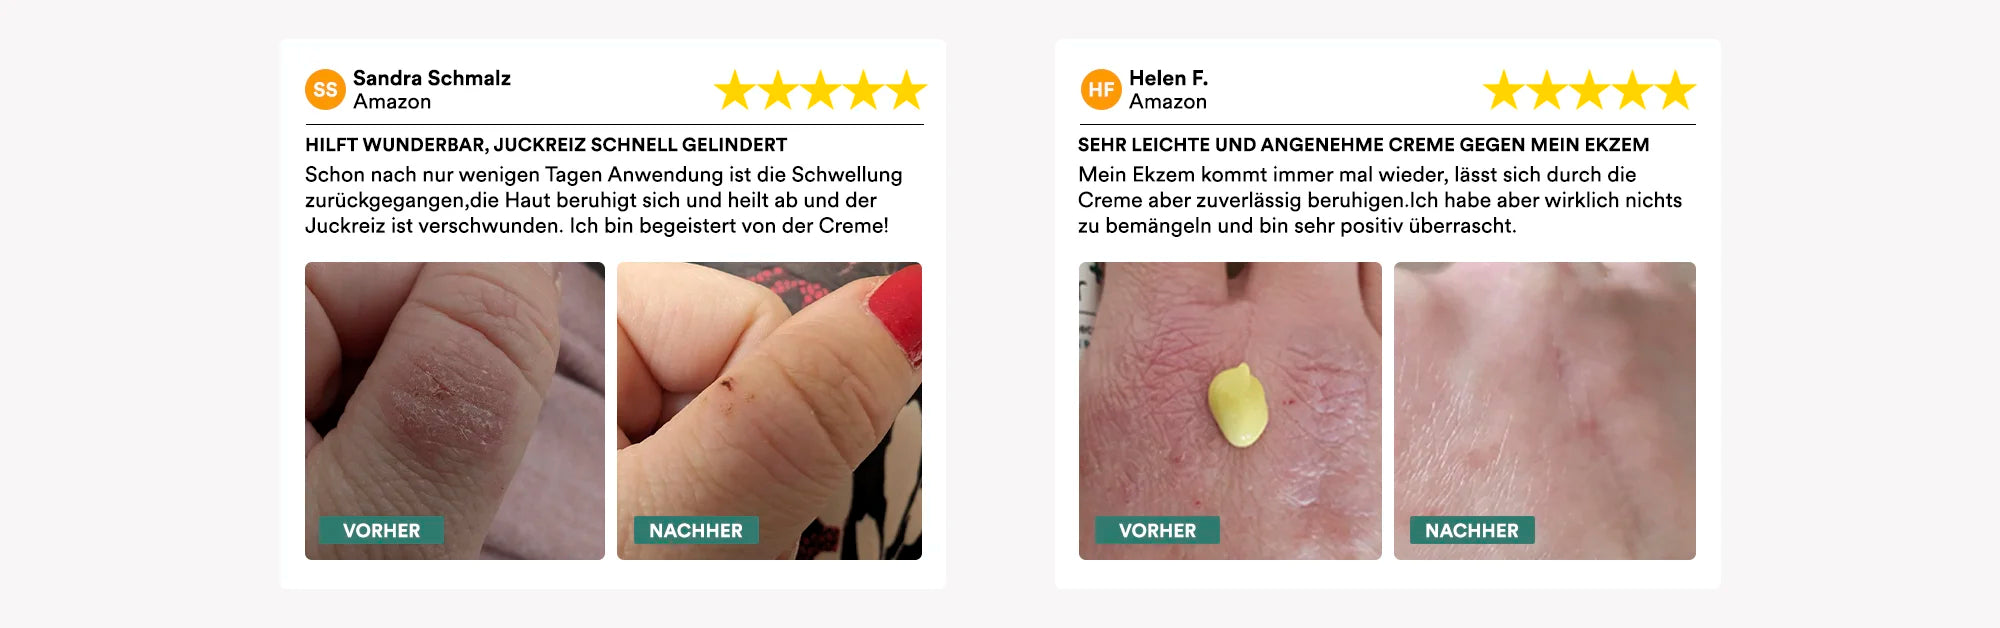 Man sieht zwei fünf Sterne Produkt-Bewertungen über die natüür Pflegecreme. Auch sieht man vorher/nachher Vergleichsbilder von Nutzern, die die Creme auf der Haut aufgetragen haben.